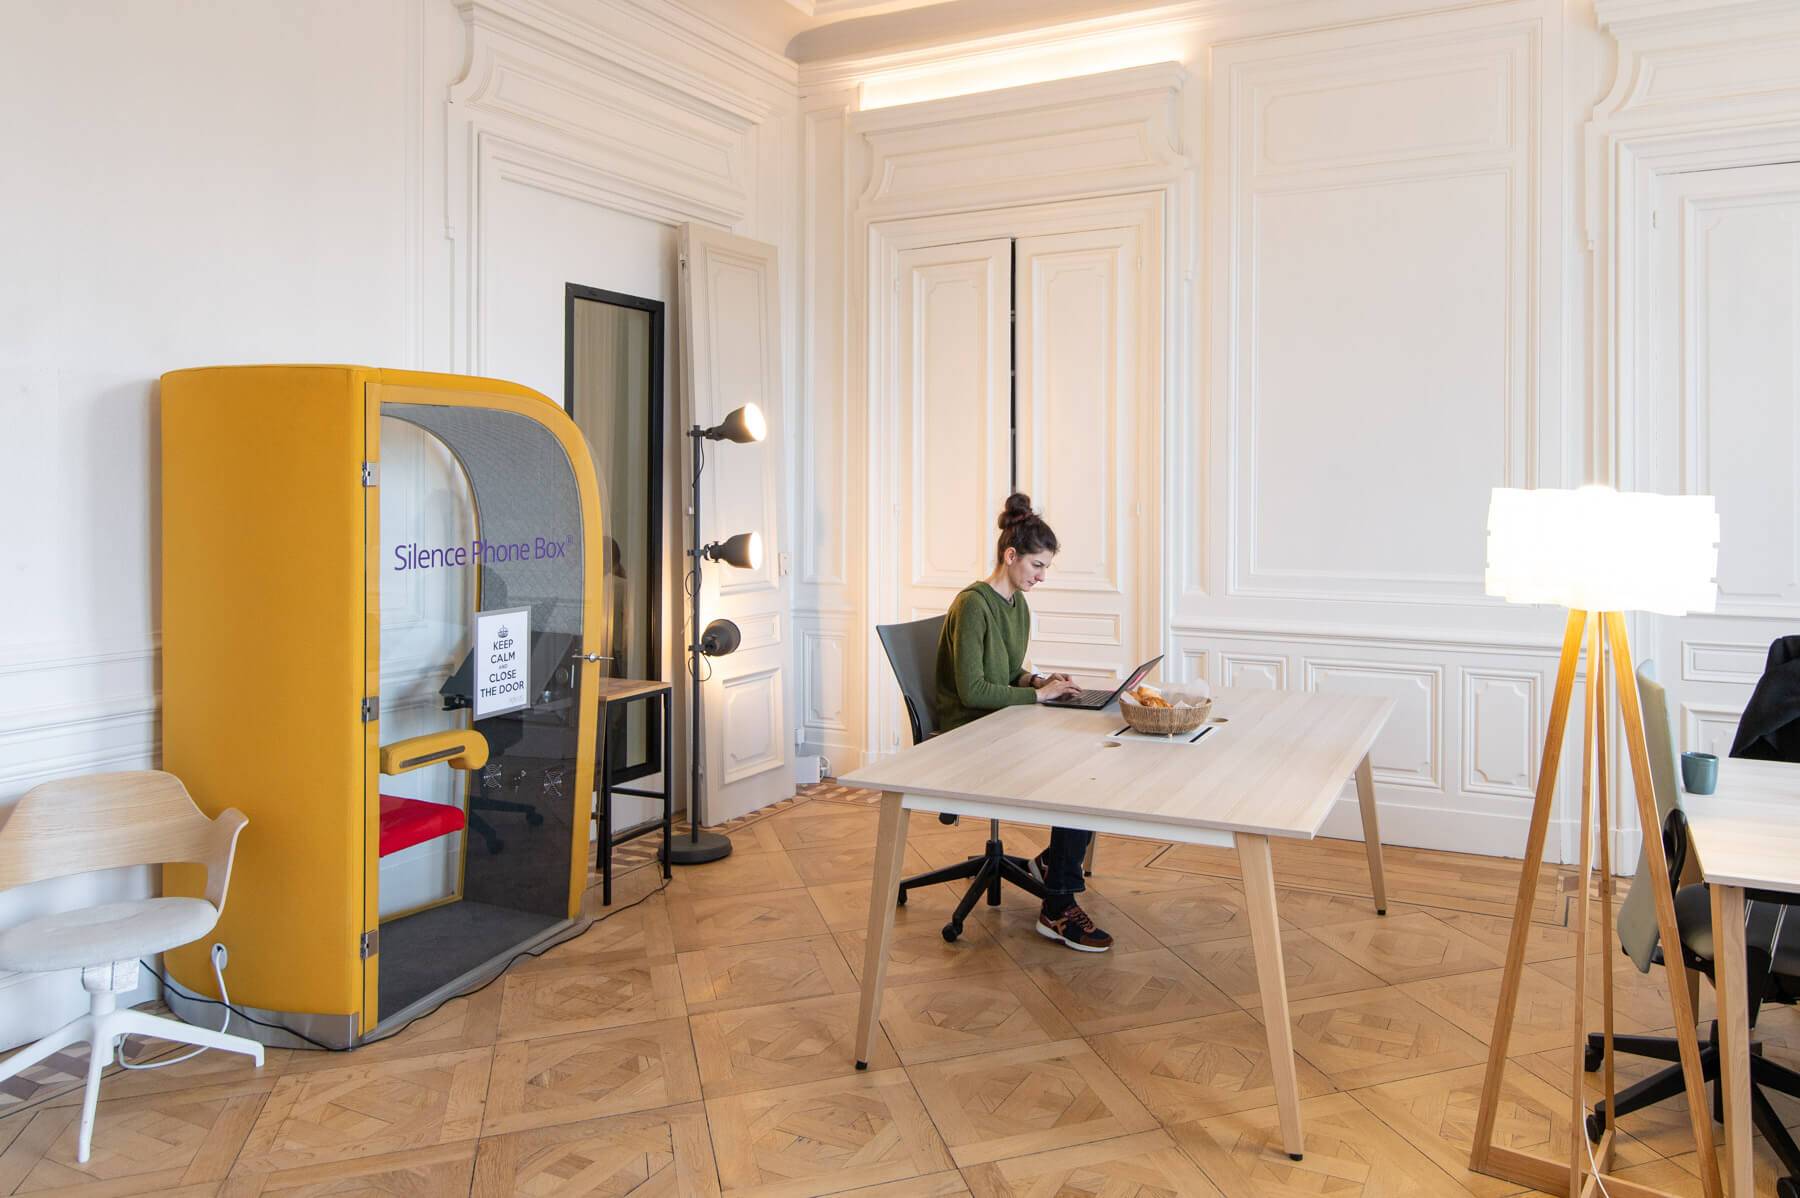 Réservez votre bureau partagé dans notre espace de coworking à Lyon.